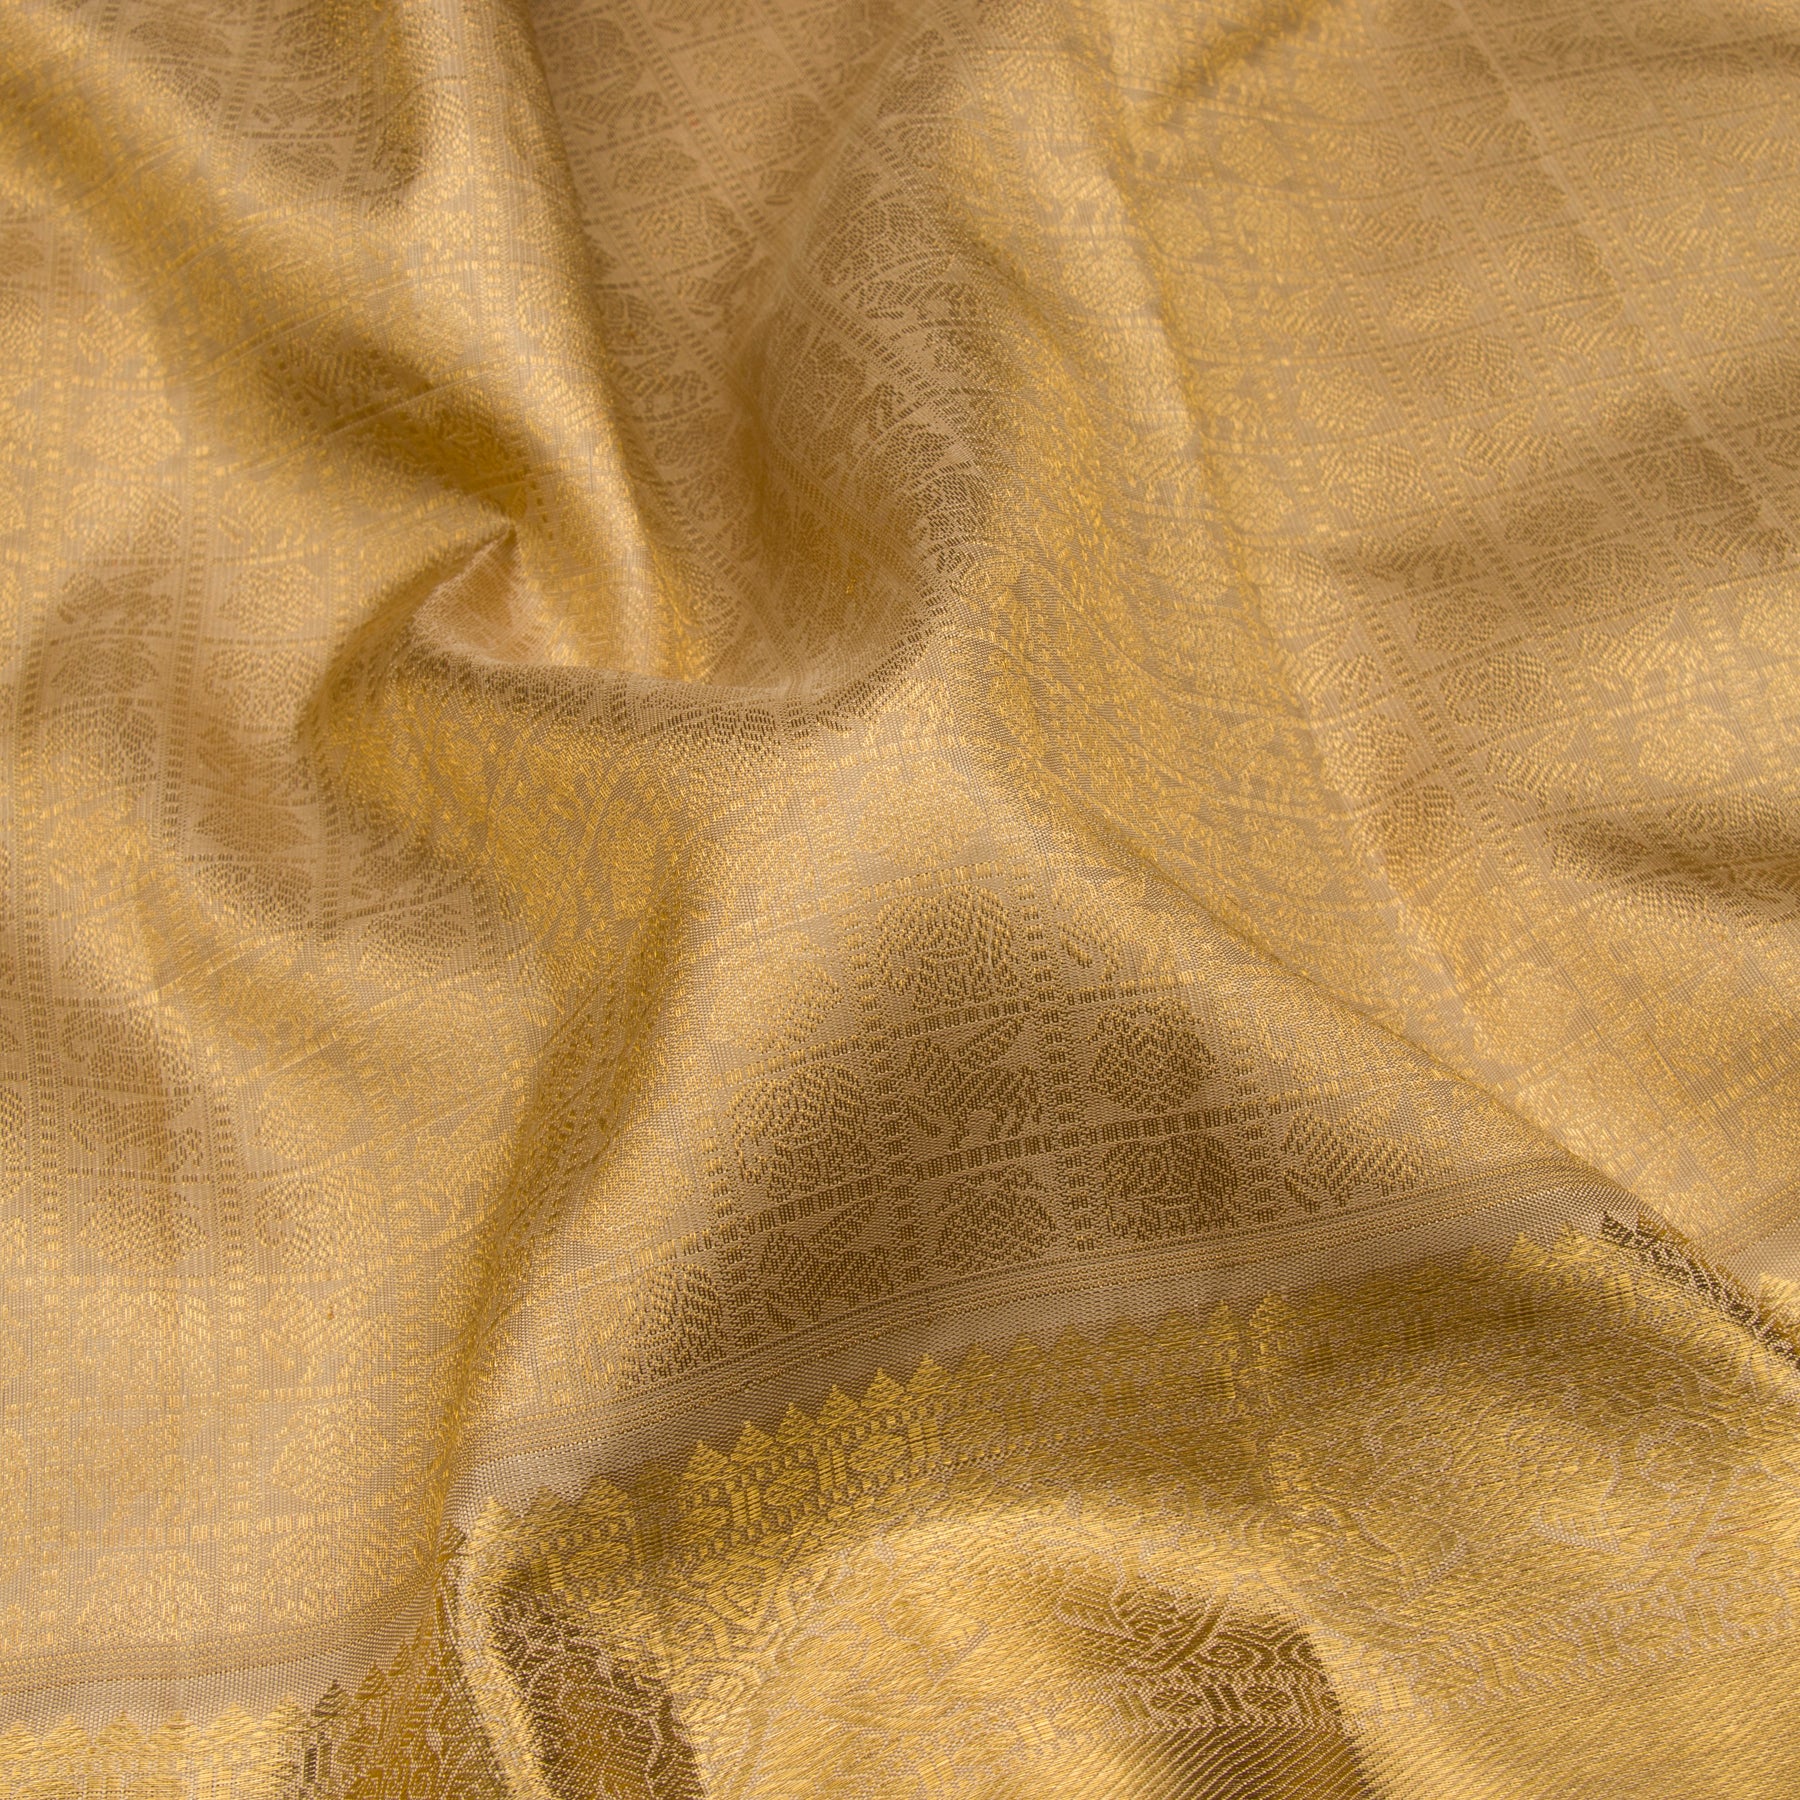 Kanakavalli Kanjivaram Silk Sari 23-110-HS001-07031 - Fabric View